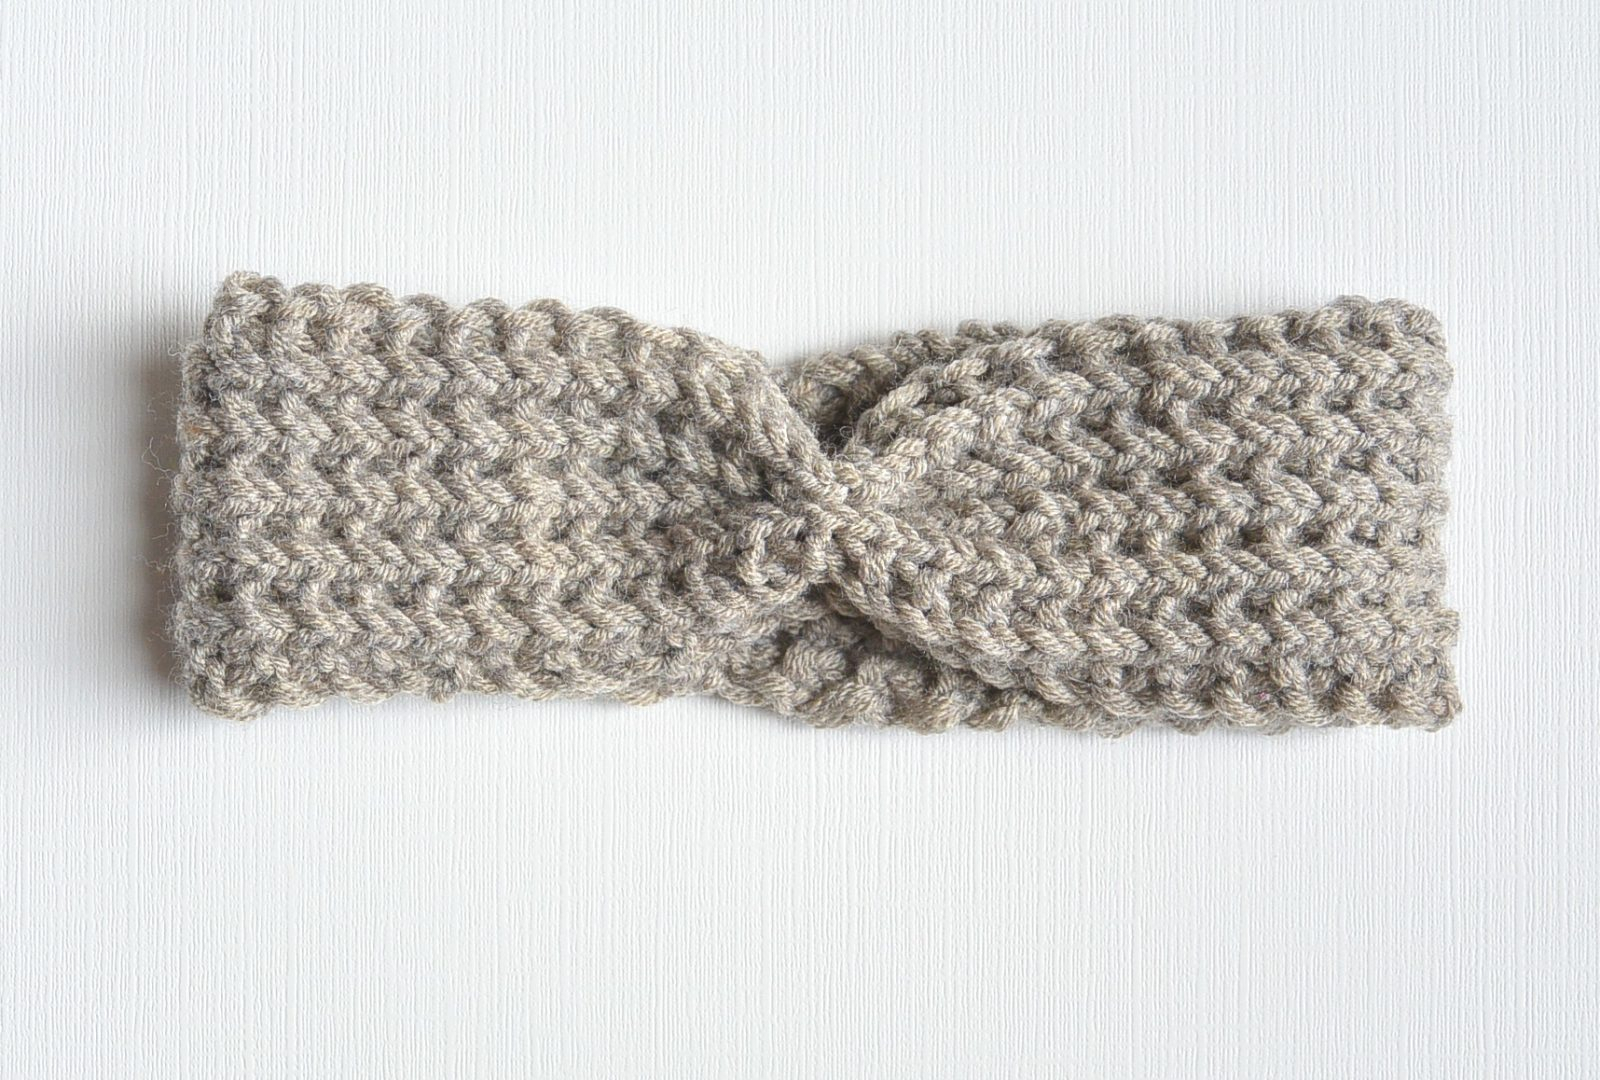 Knitting Headband Pattern Free Half Fisherman Knit Headband Downton Abbey Yarn Mama In A Stitch